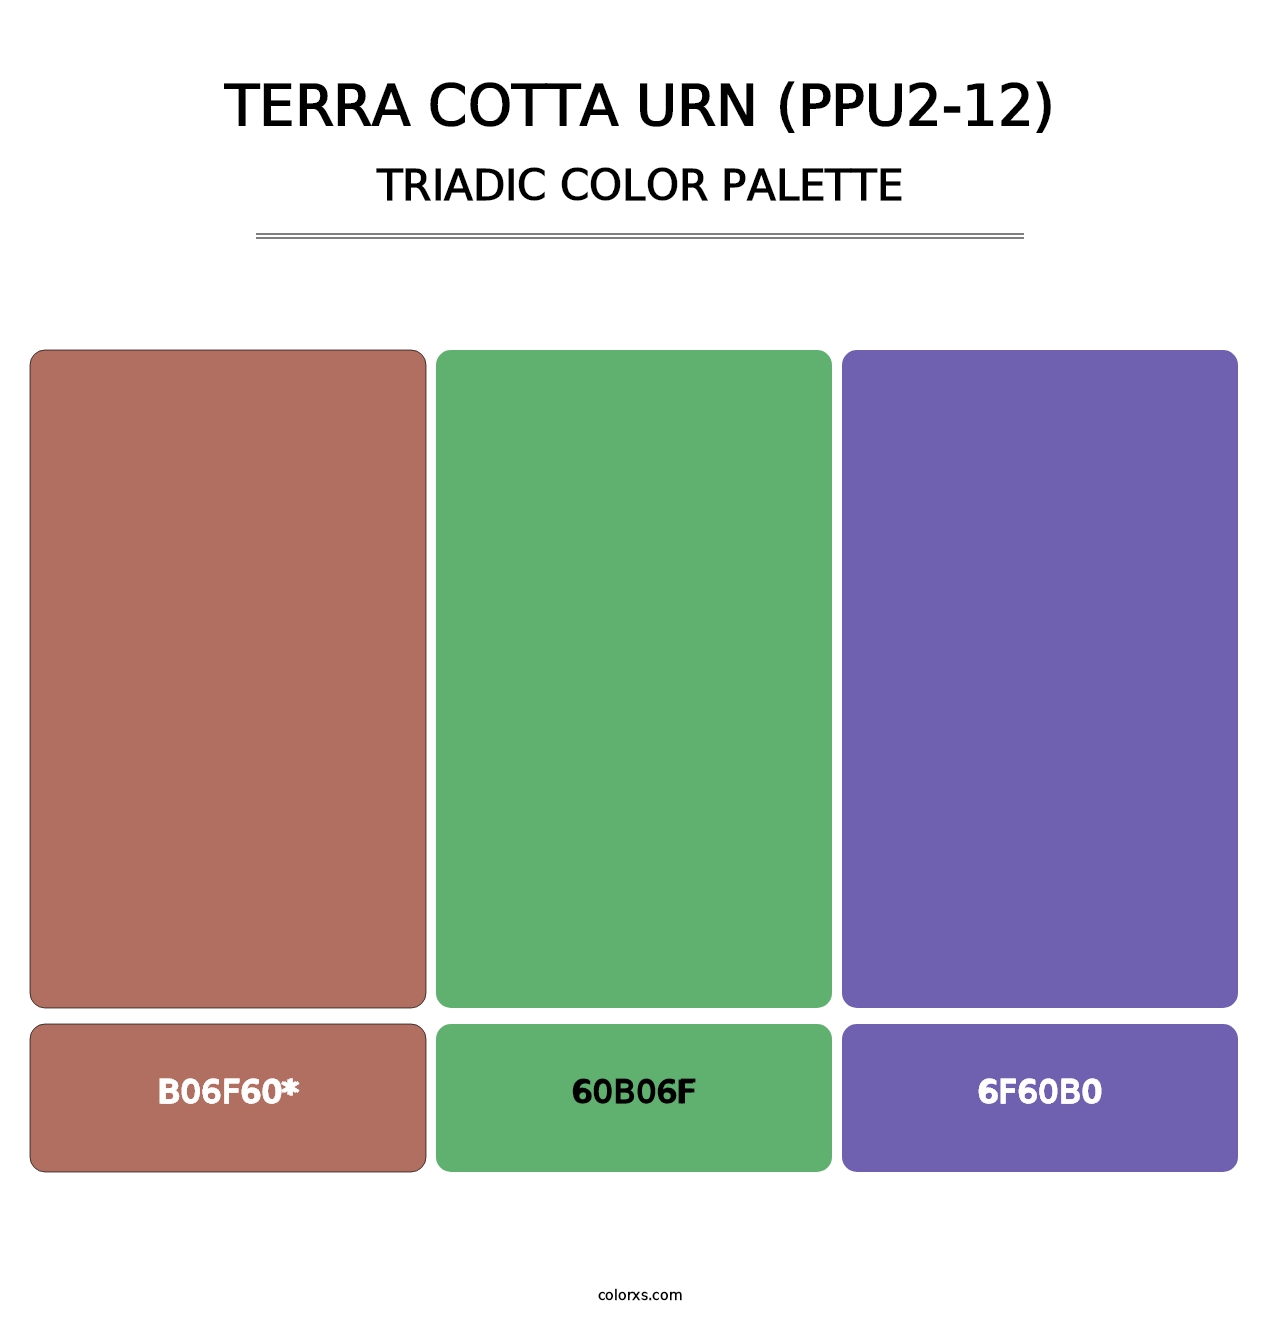 Terra Cotta Urn (PPU2-12) - Triadic Color Palette